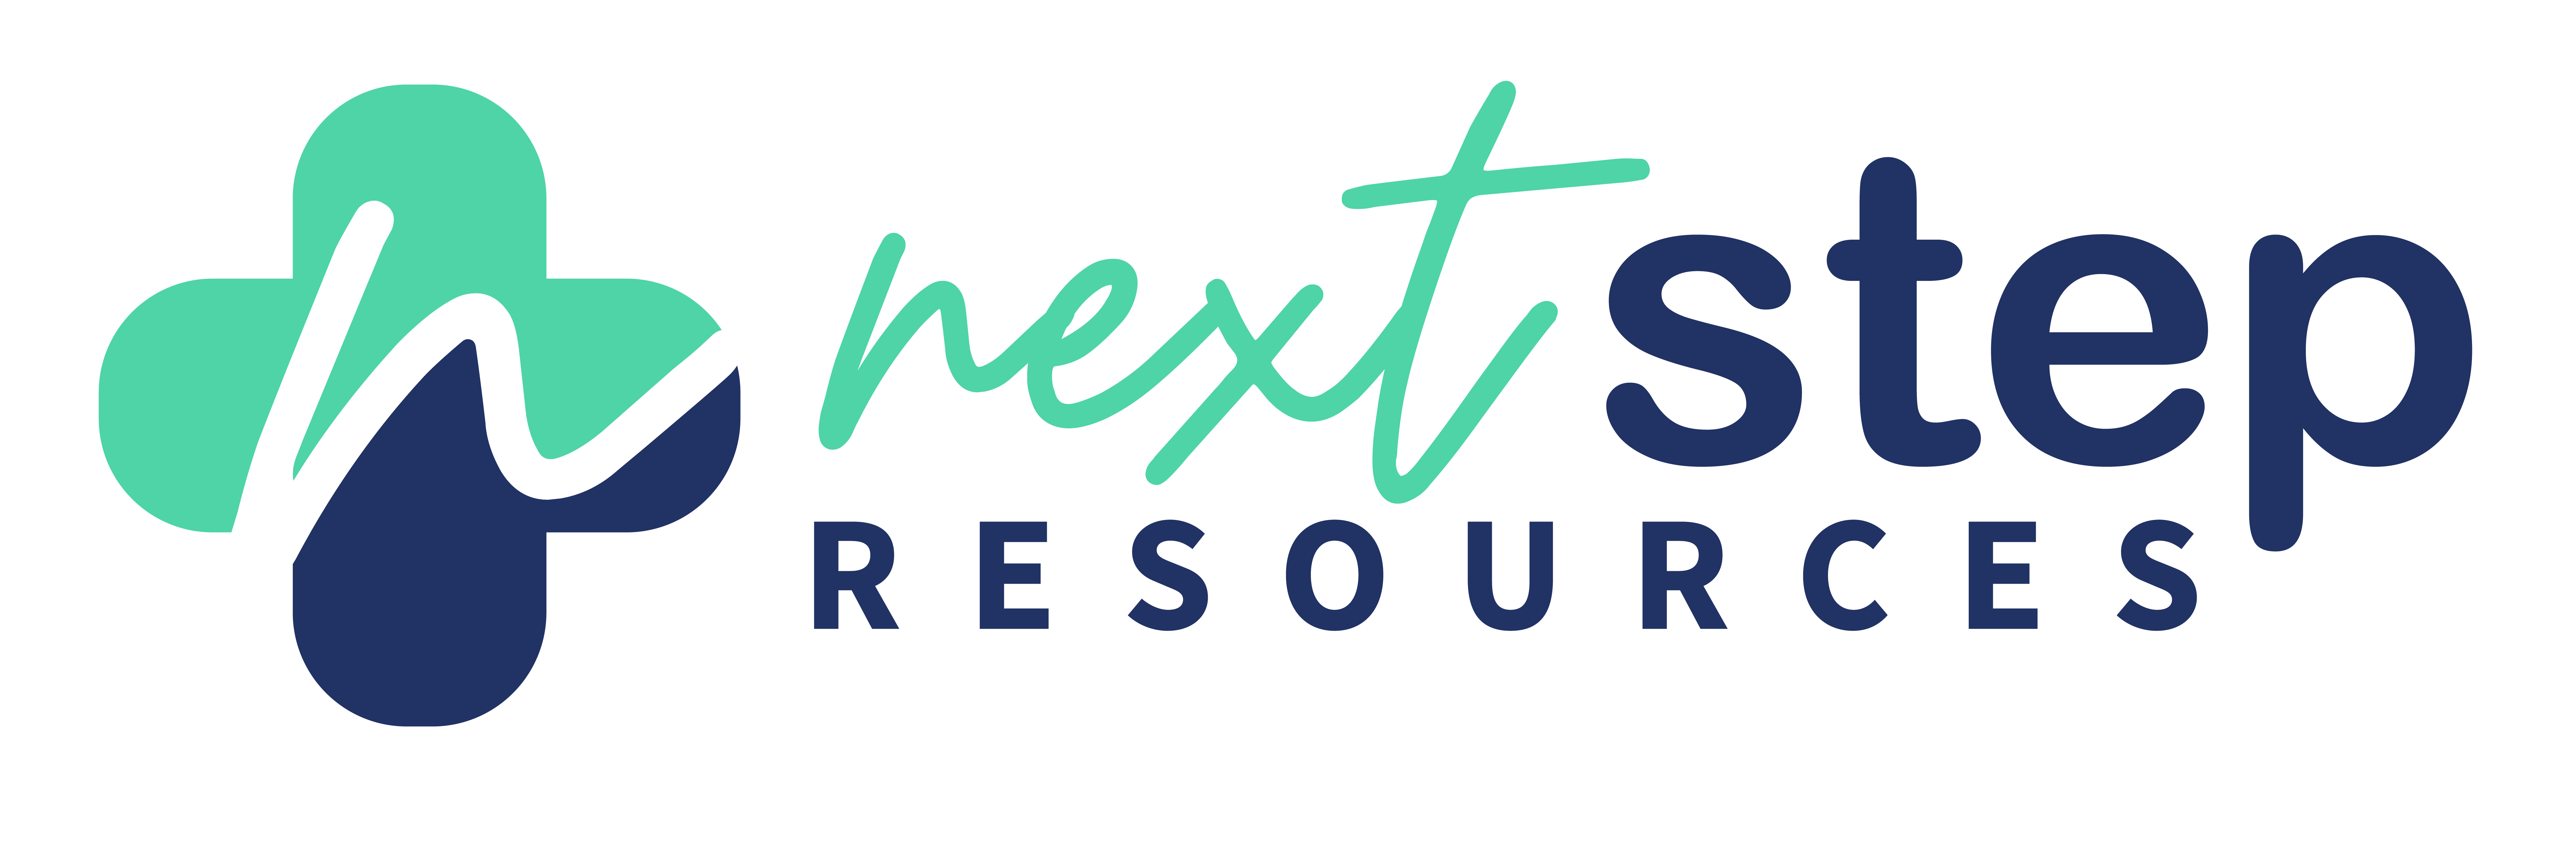 Next Step Resources Center logo